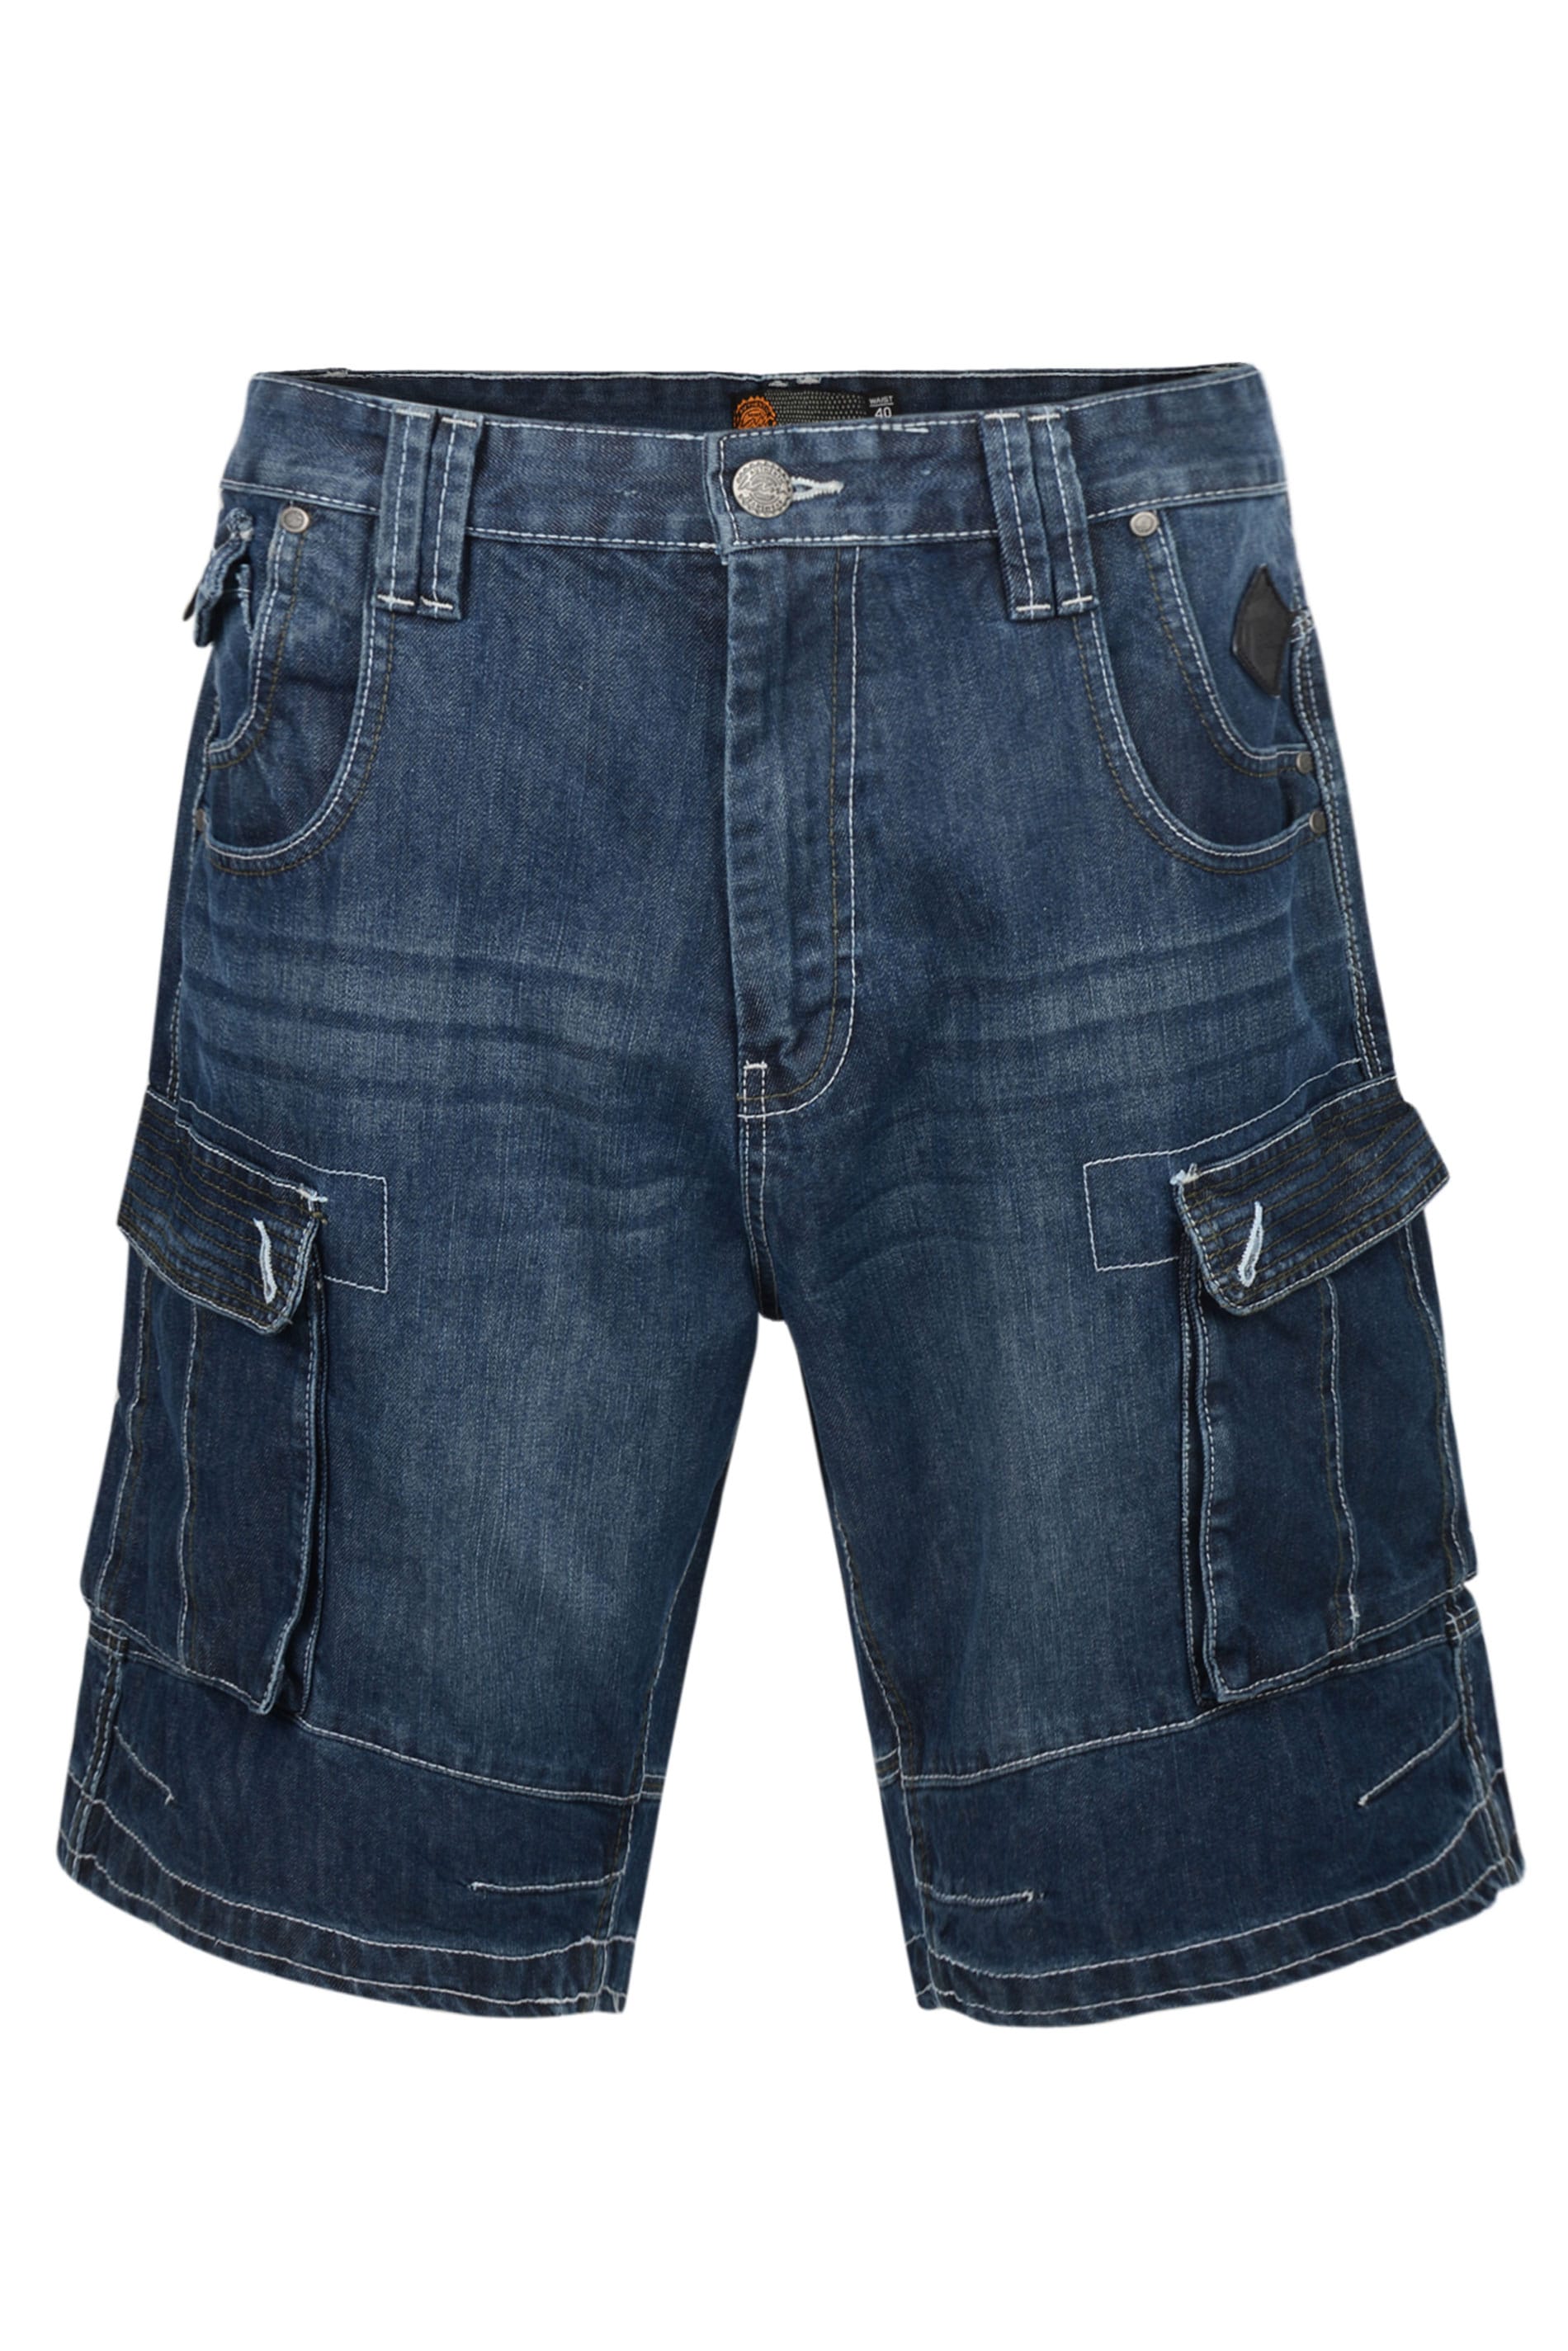 KAM Blue Stretch Denim Pocket Shorts | BadRhino